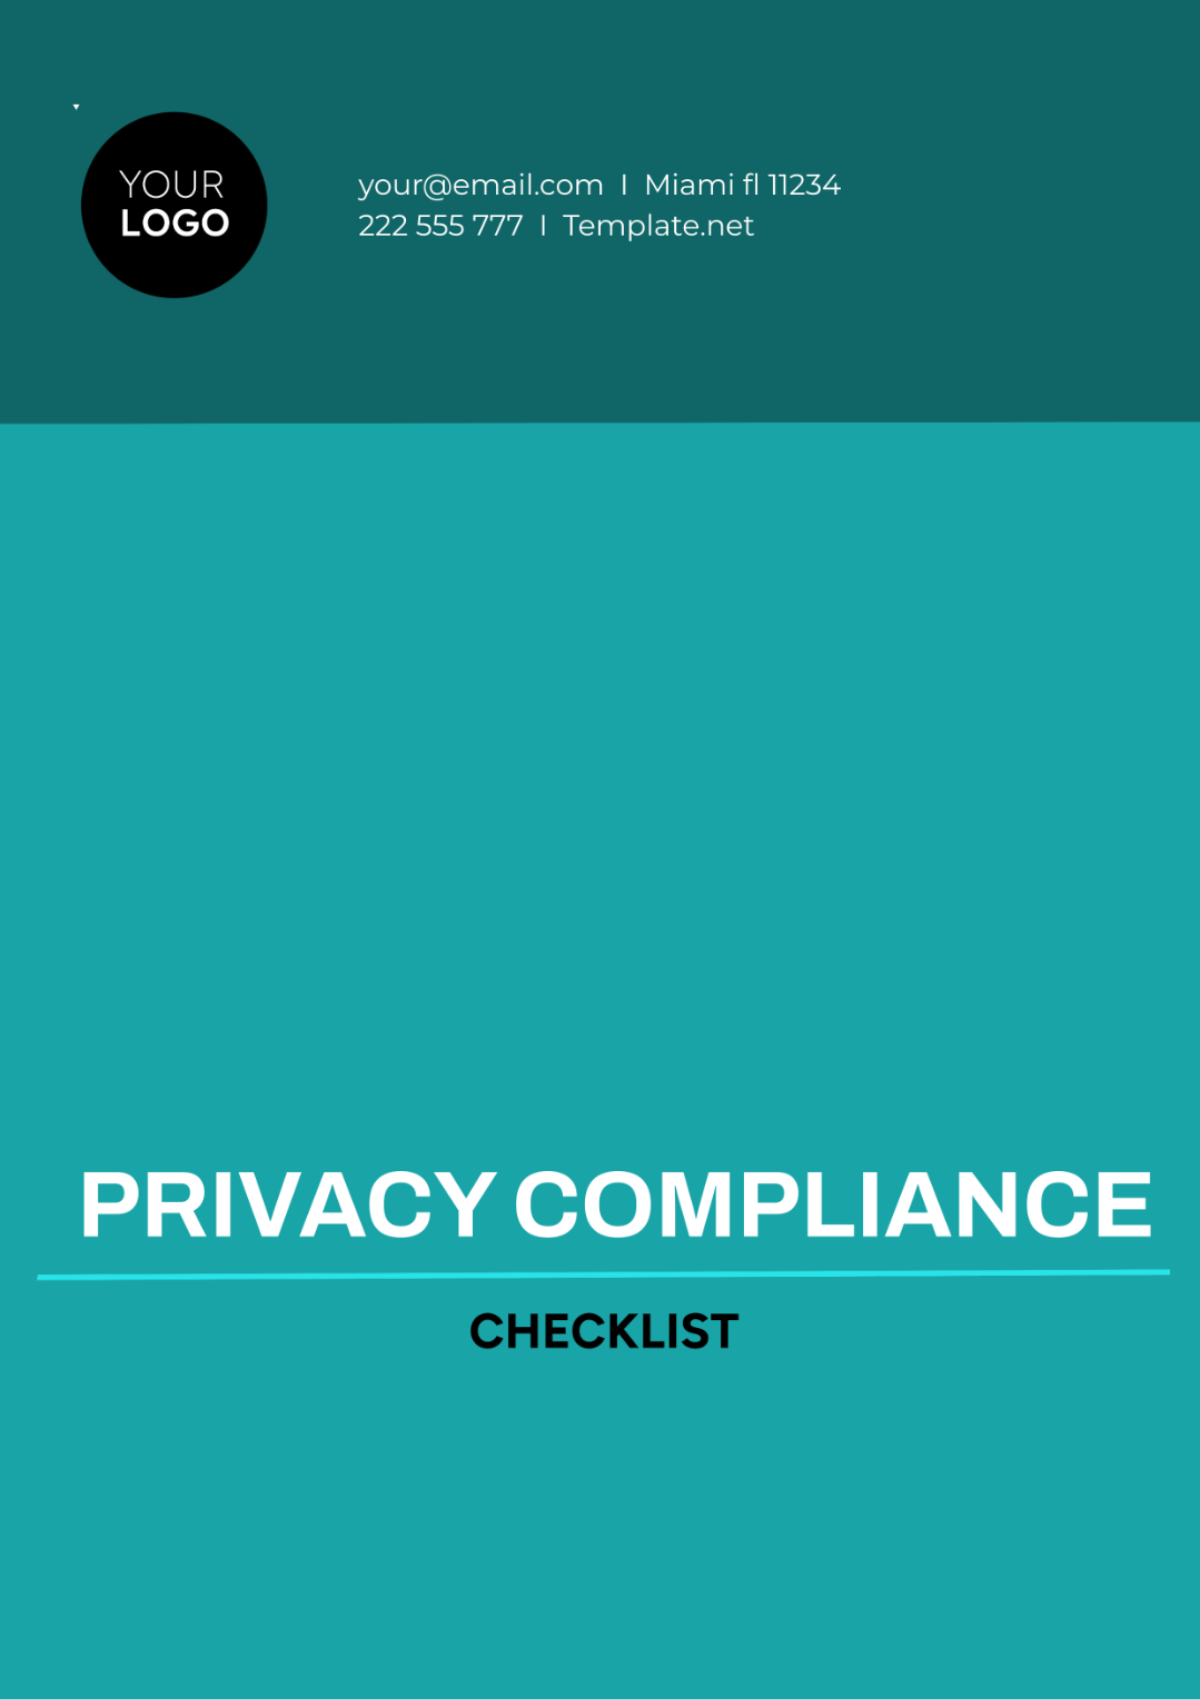 Privacy Compliance Checklist Template